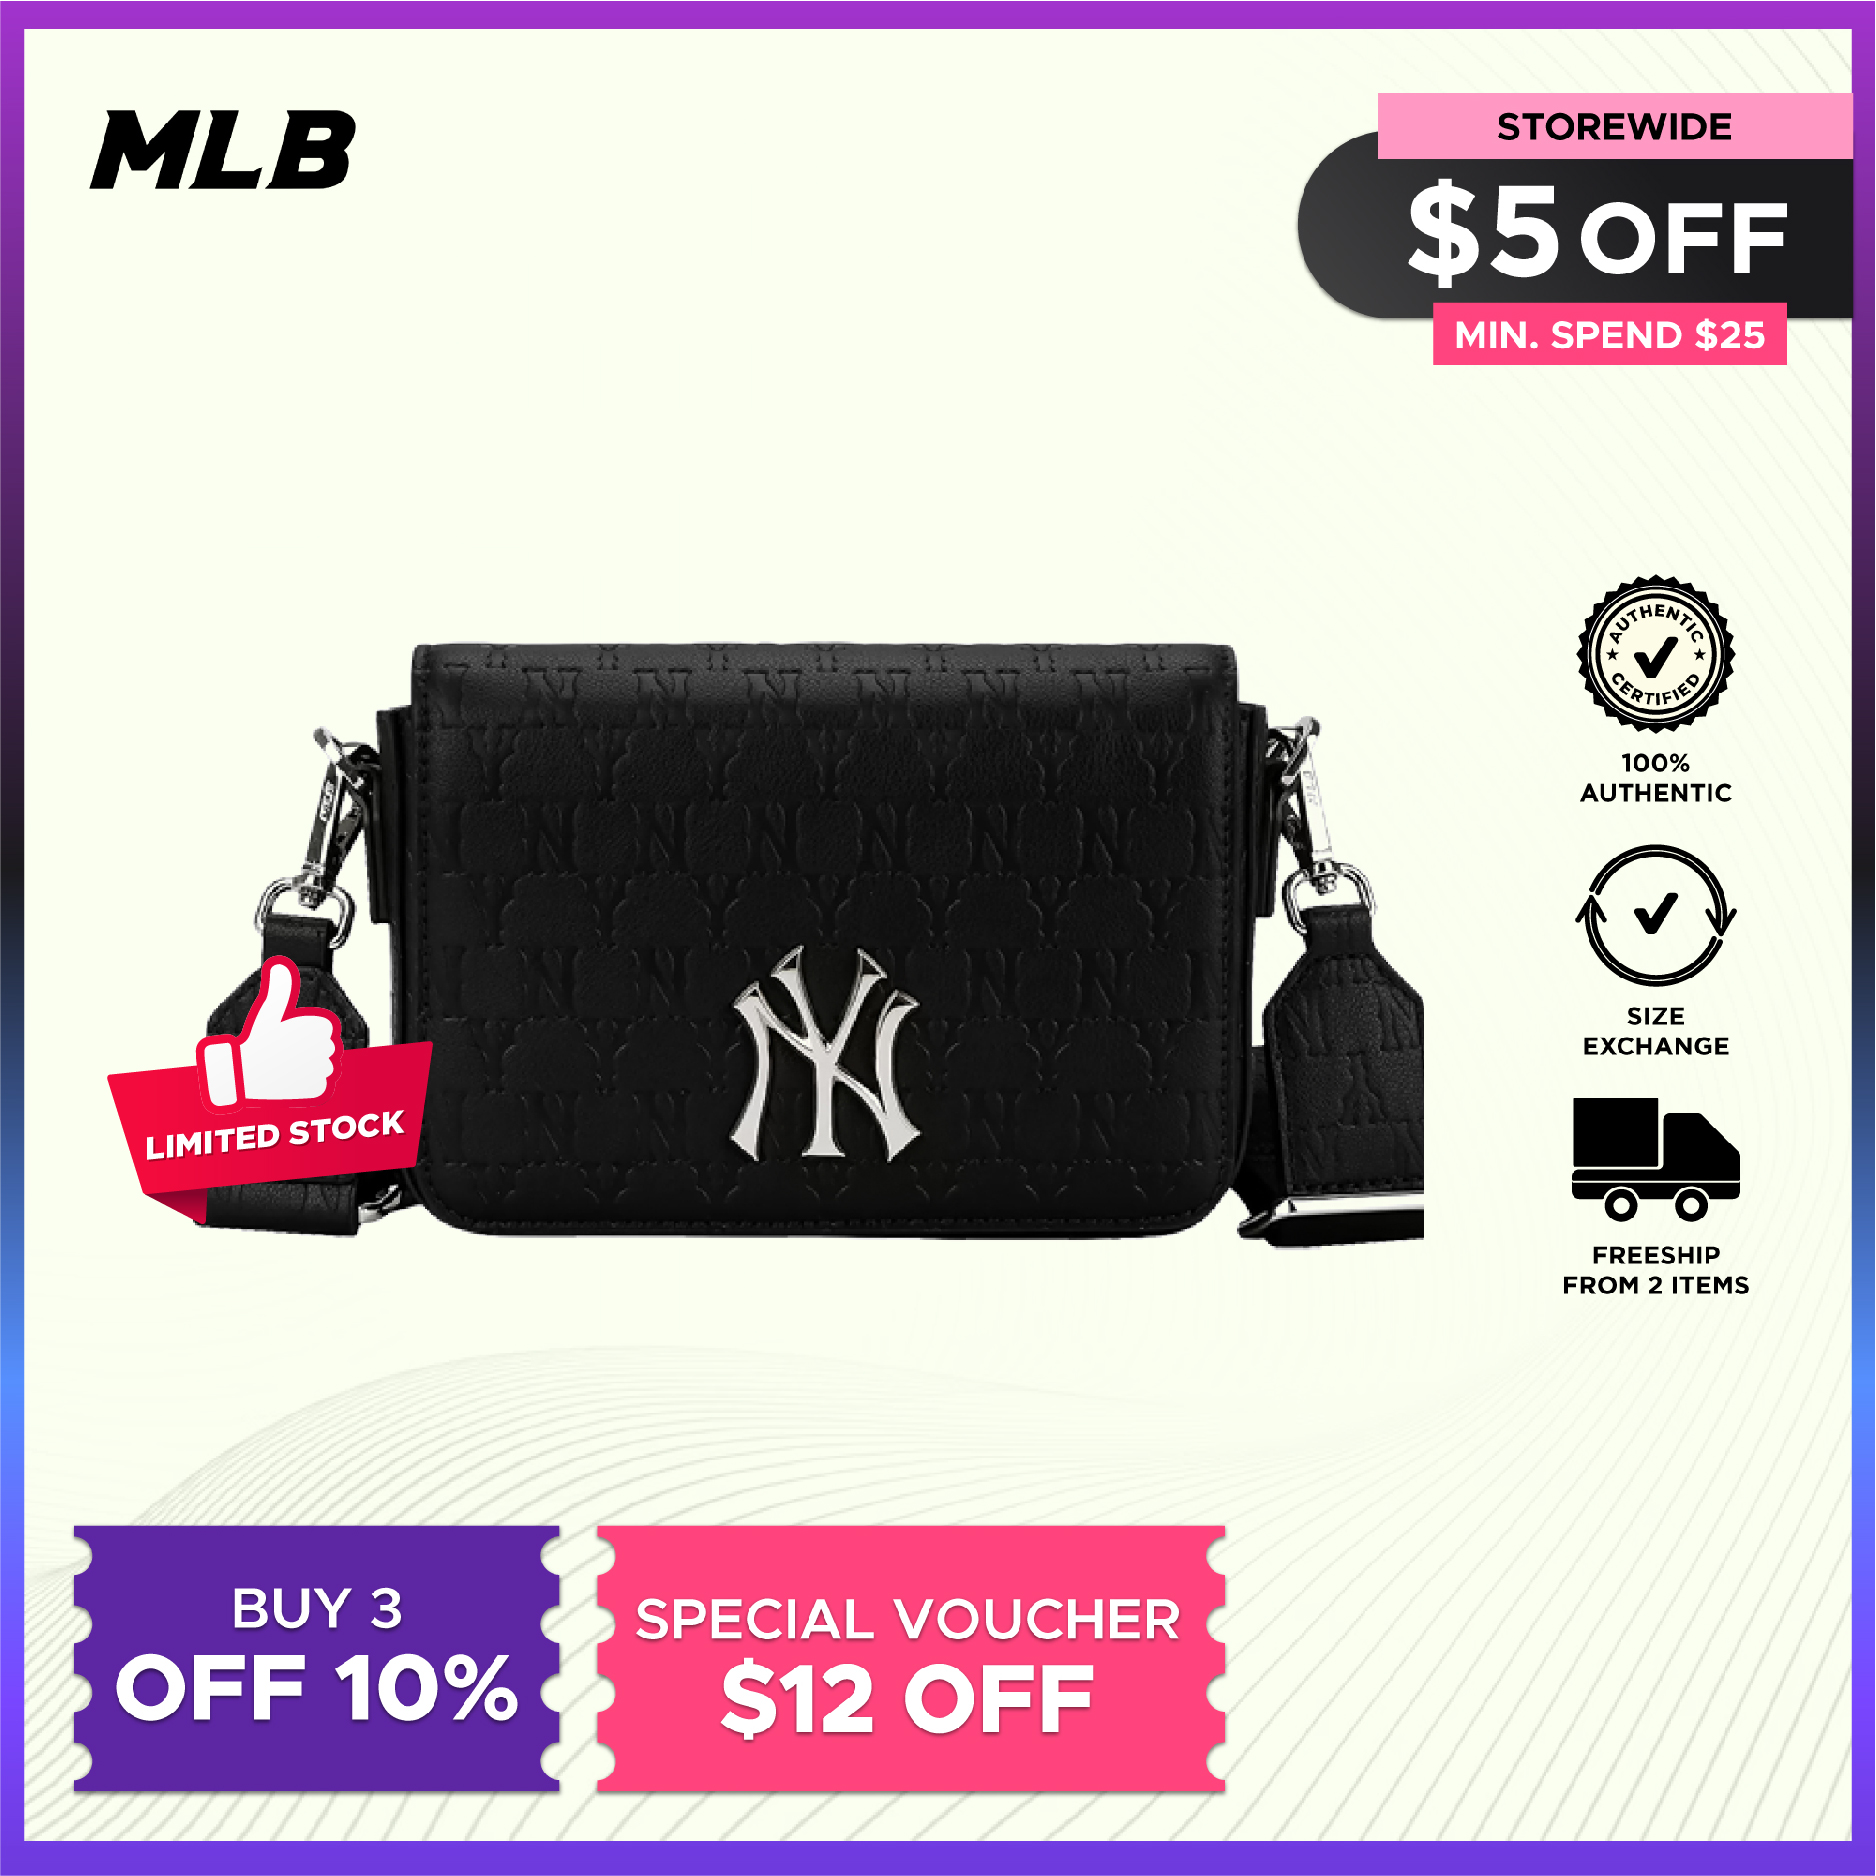 Túi MLB Monogram Hoodie Bag NY Yankees C101 Màu Đen - V Dreamer Store